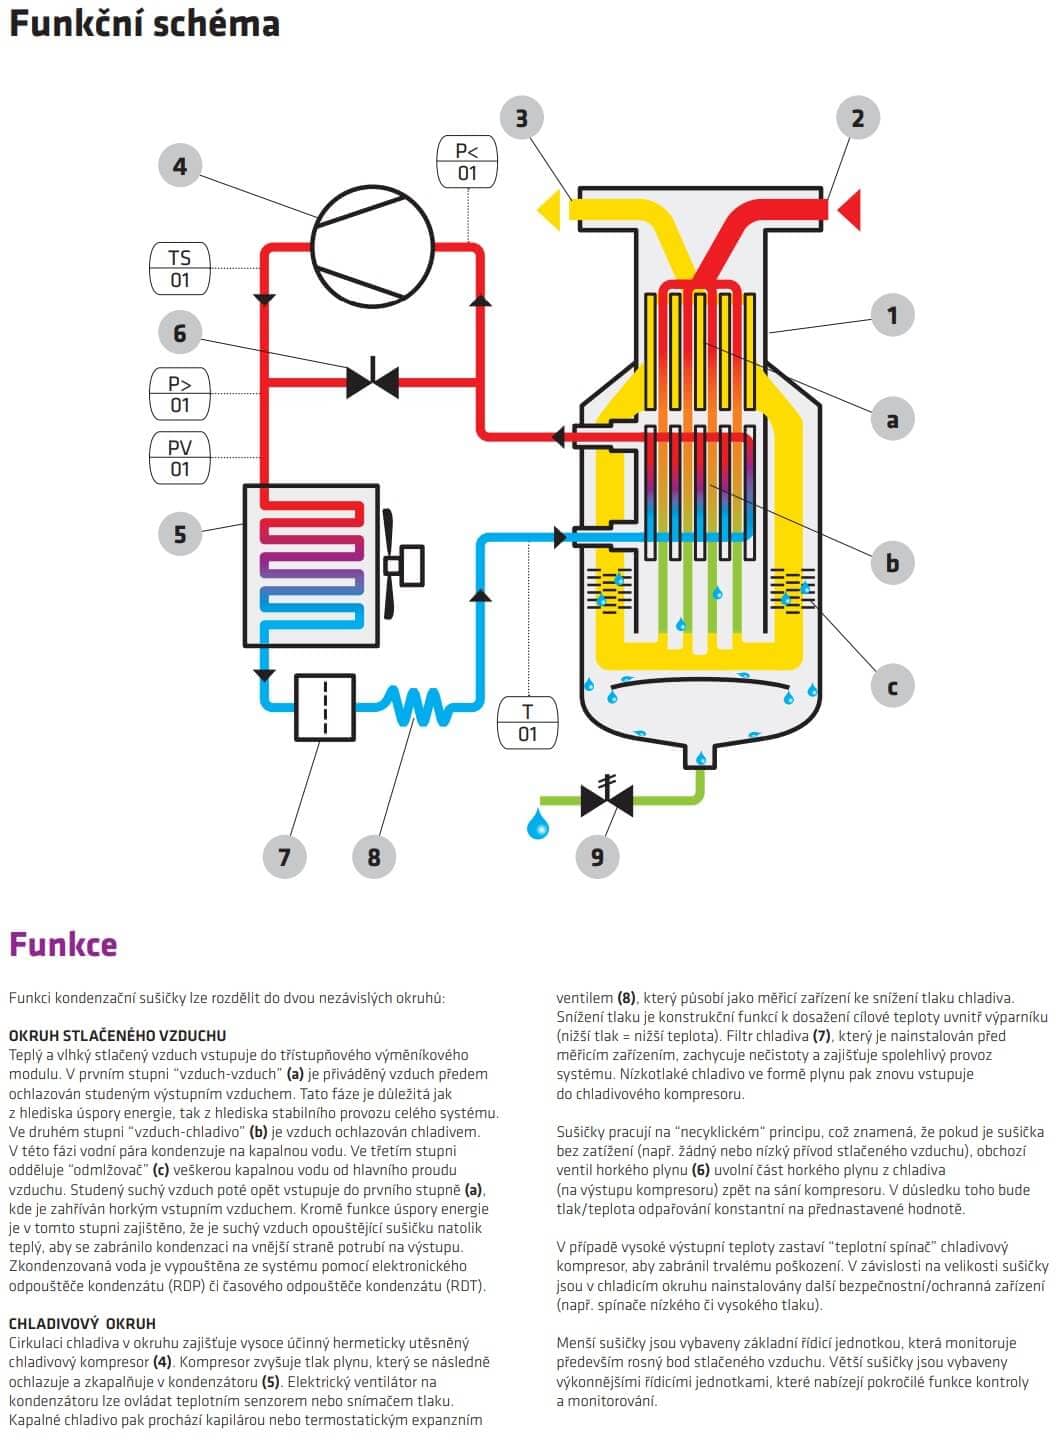 Funkční schéma sušení stlačeného vzduchu kompresoru